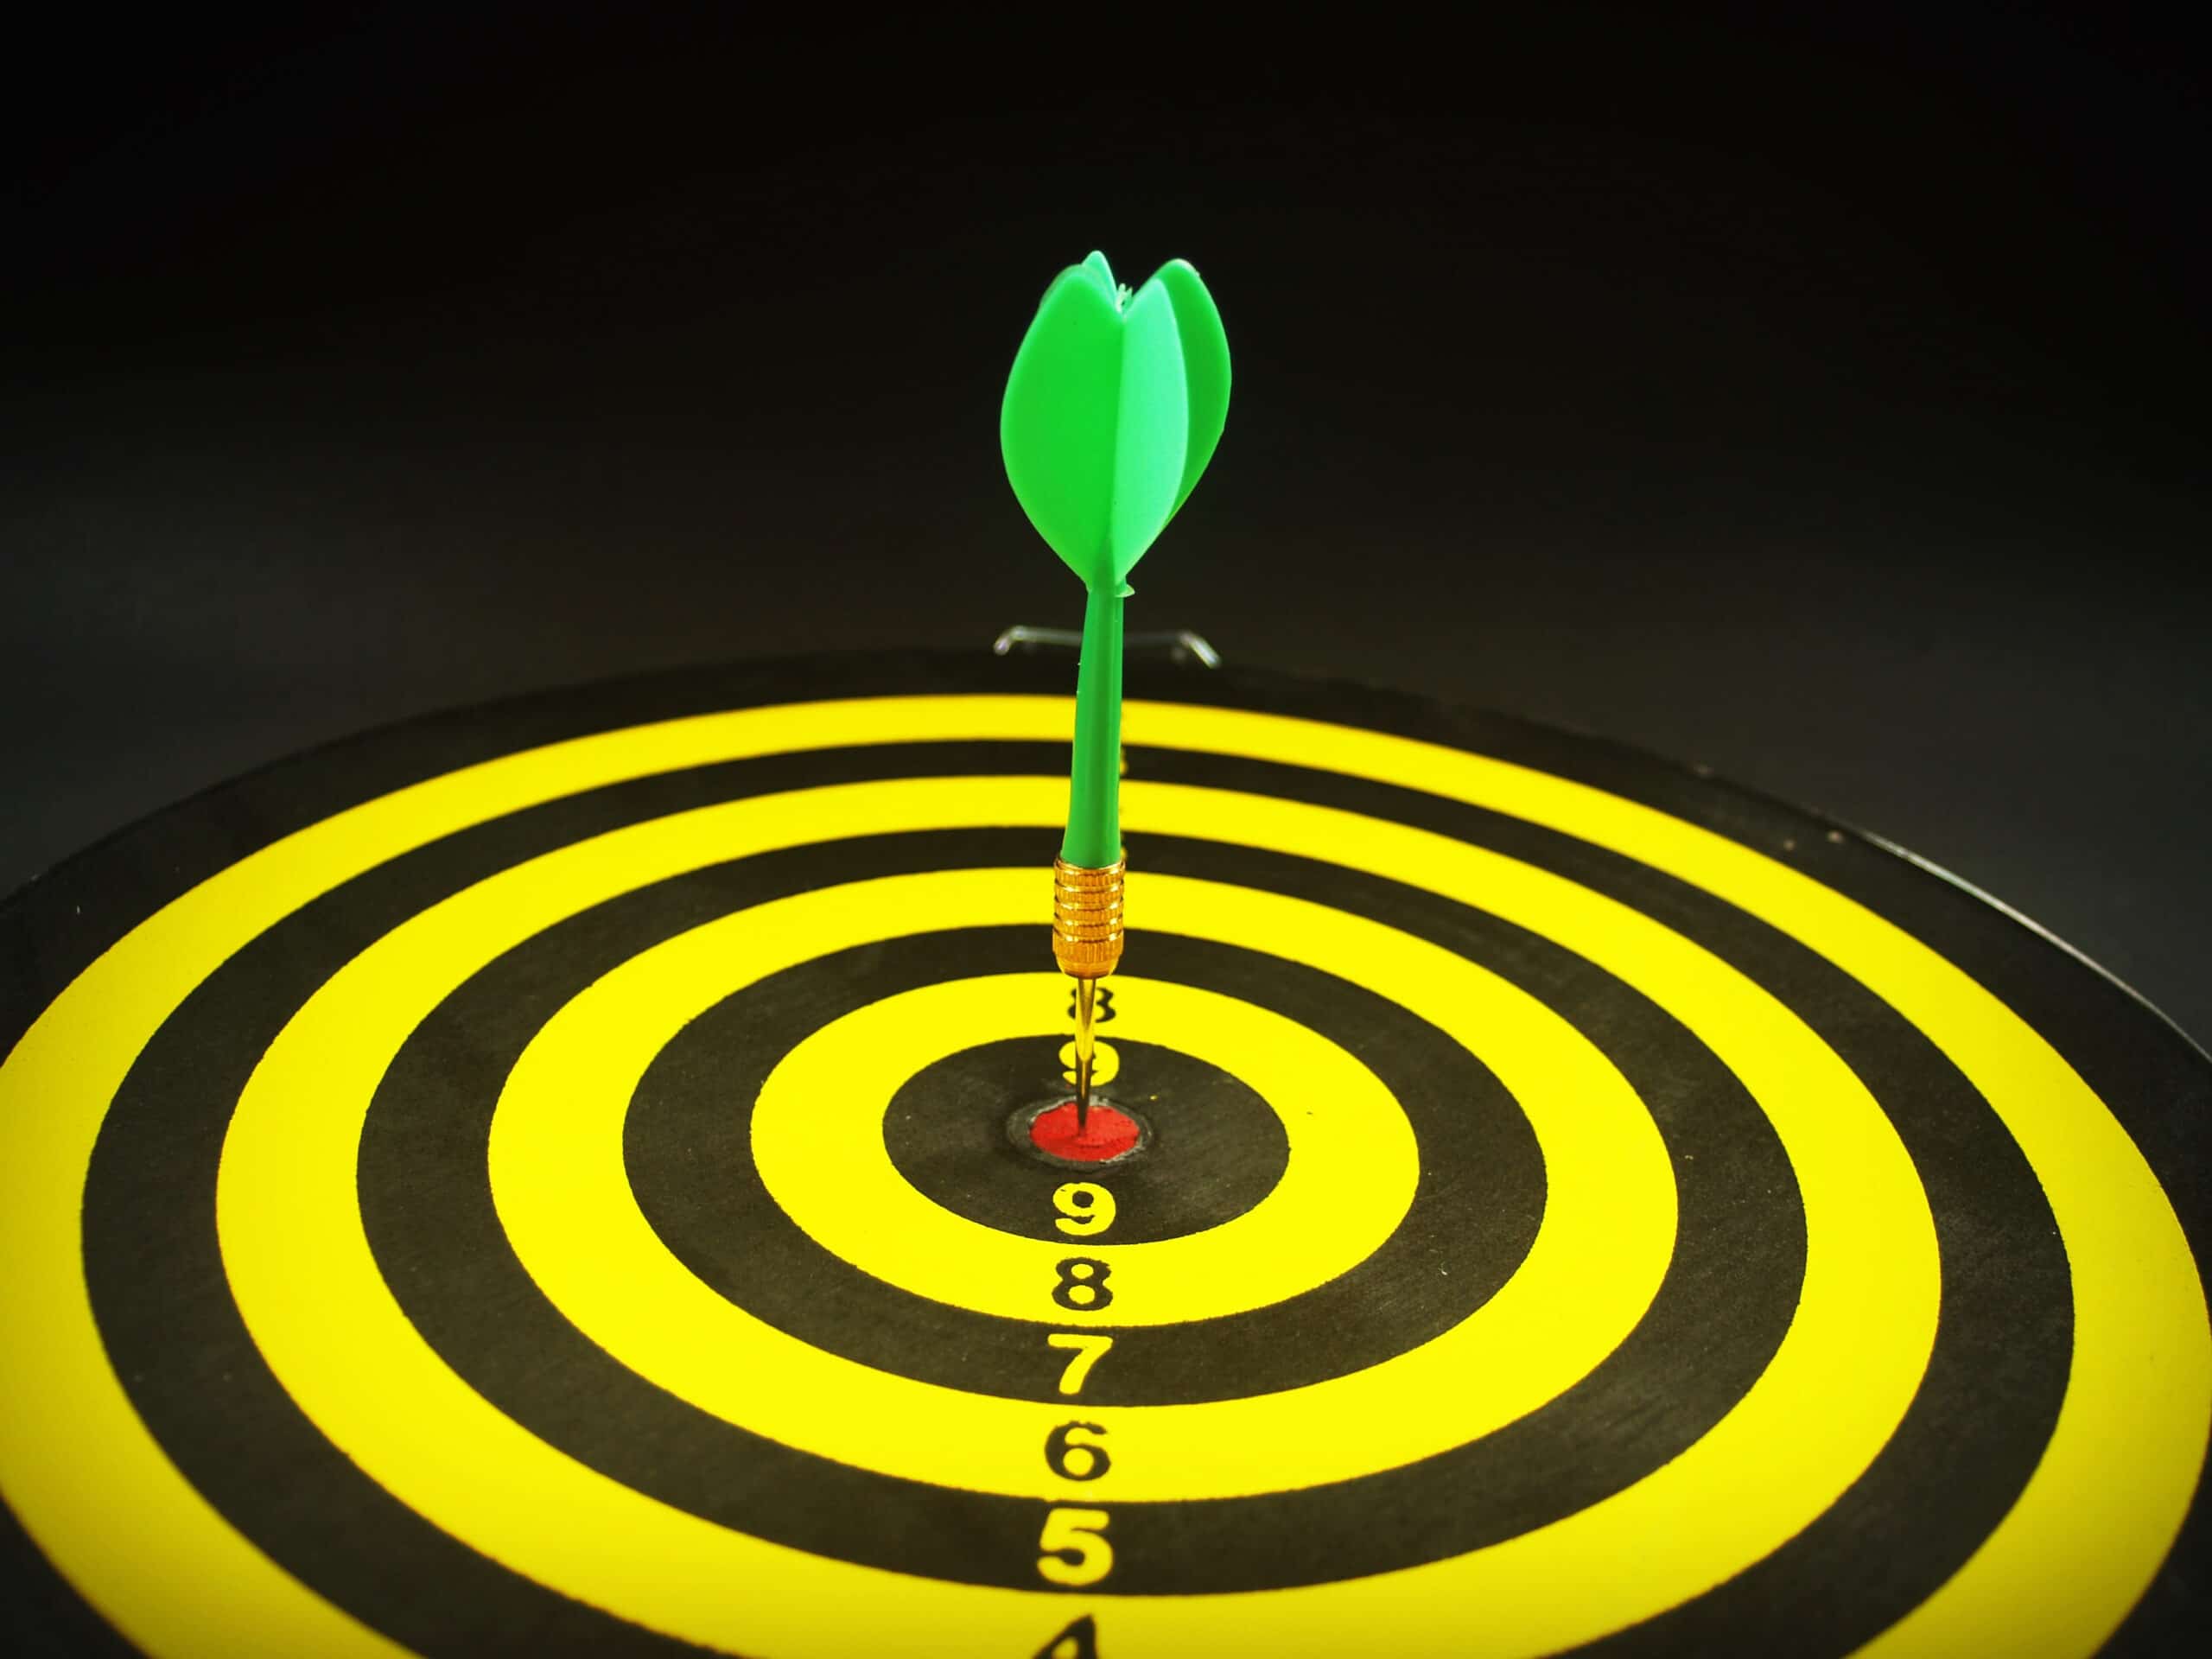 Dartboard target aim goal achievement concept